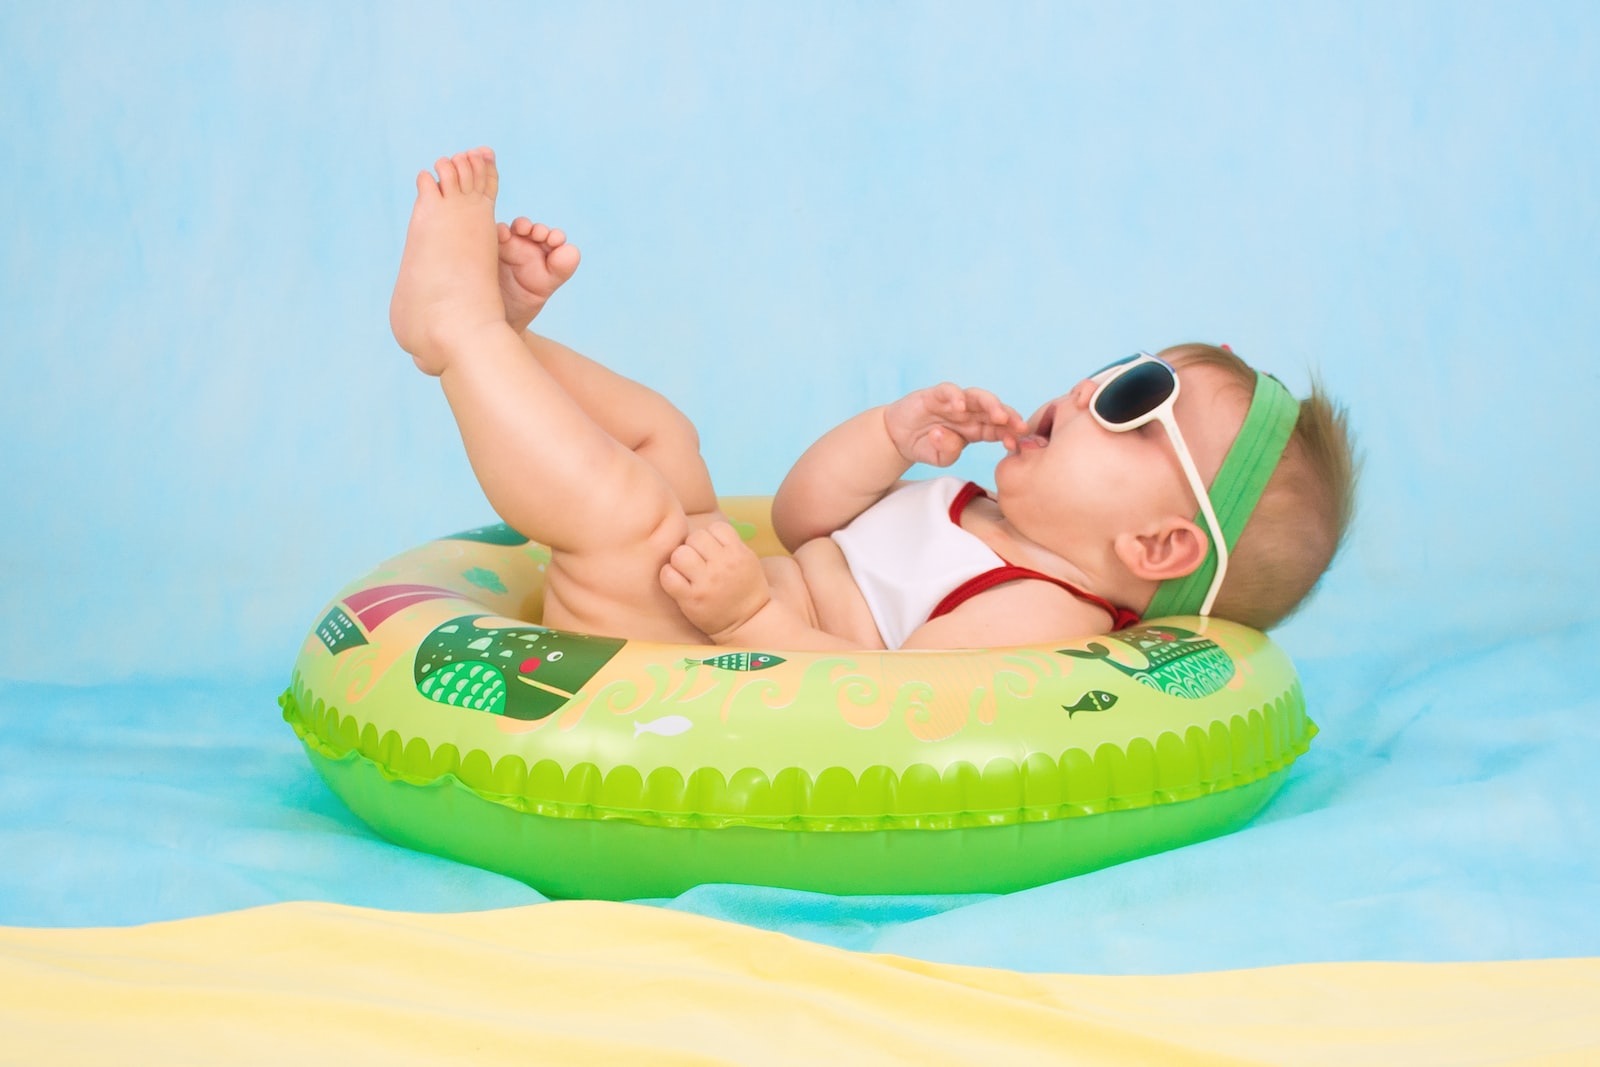 Sonnenschutz - Baby und Kinder richtig schützen